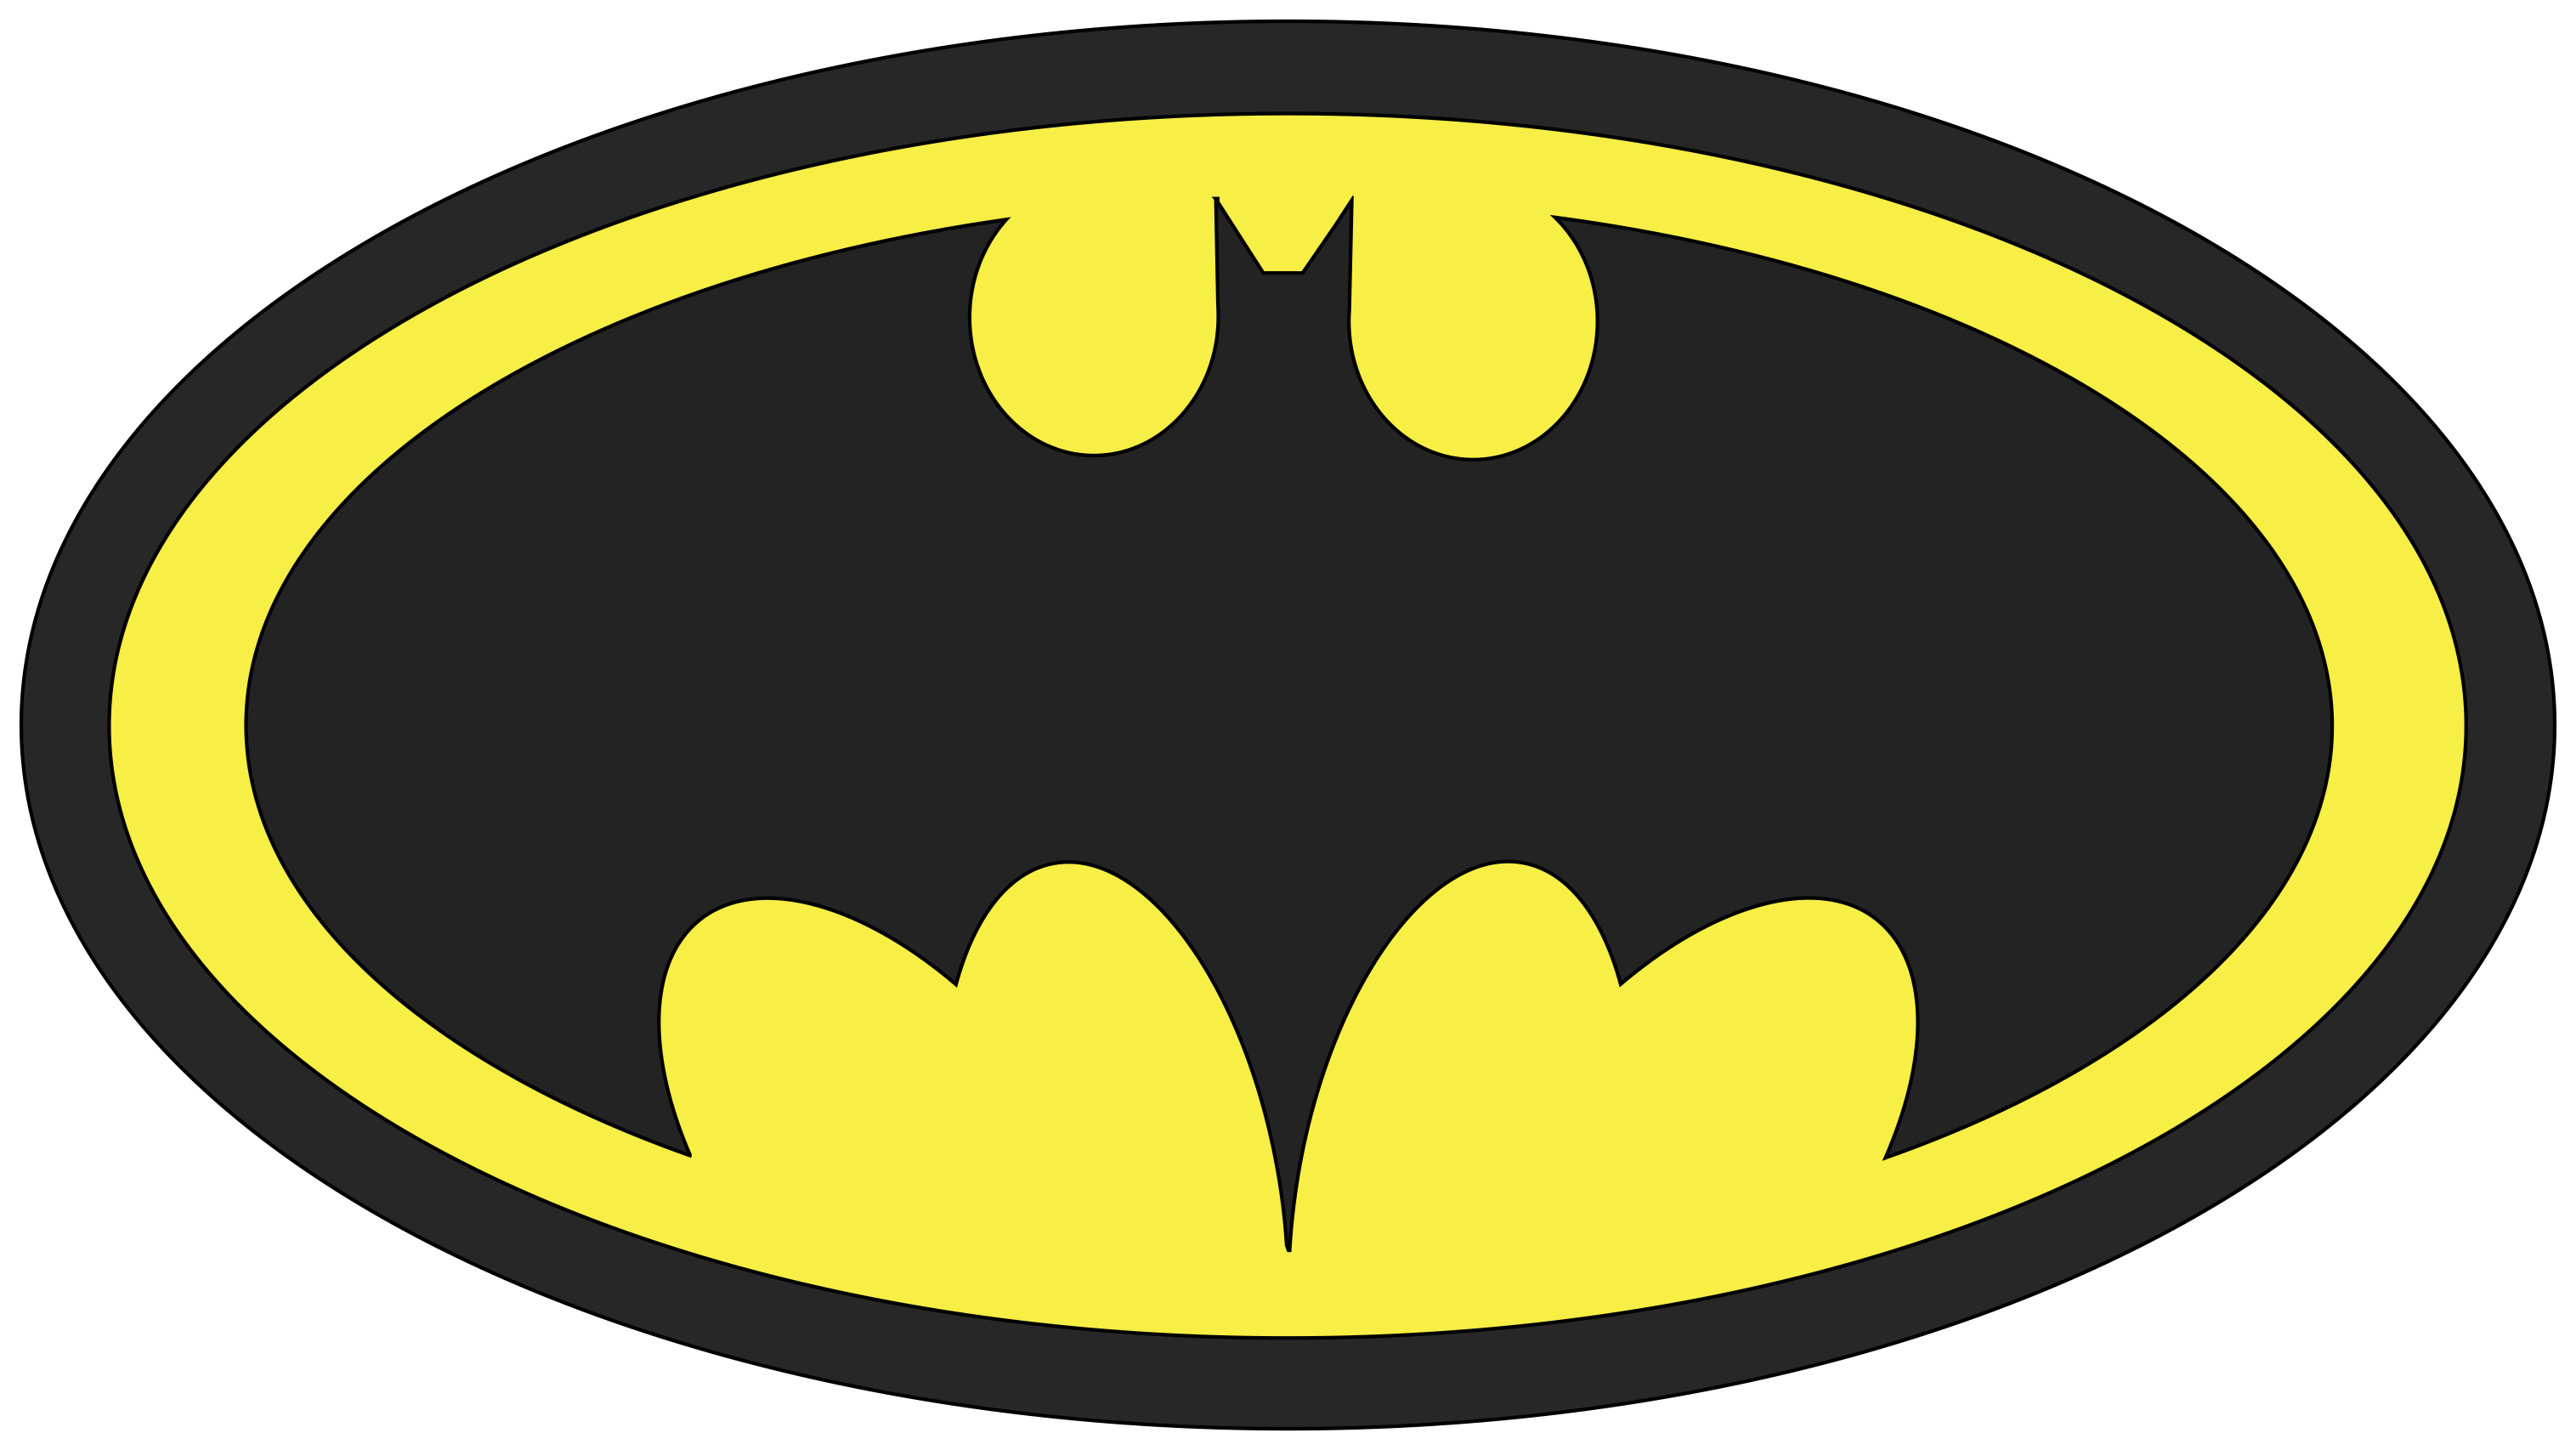 Pictxeer » Search Results » Batman Logo